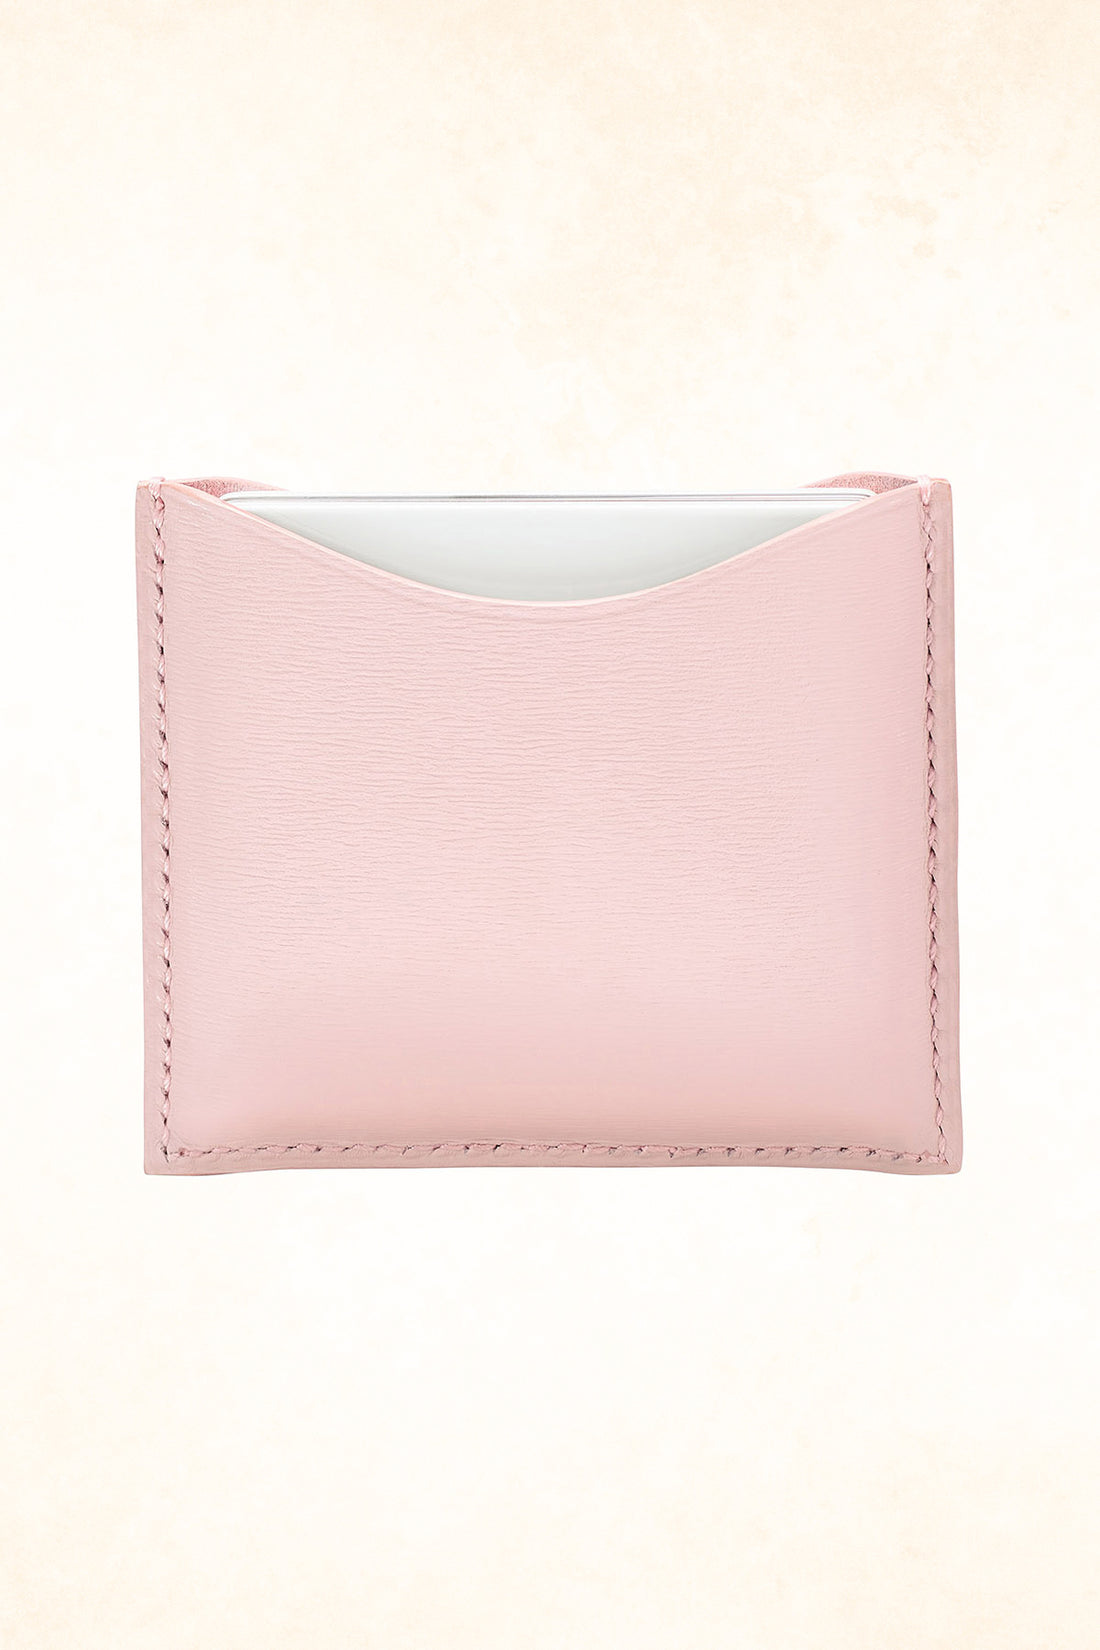 La Bouche Rouge – Refillable Pink Fine Leather Compact Case